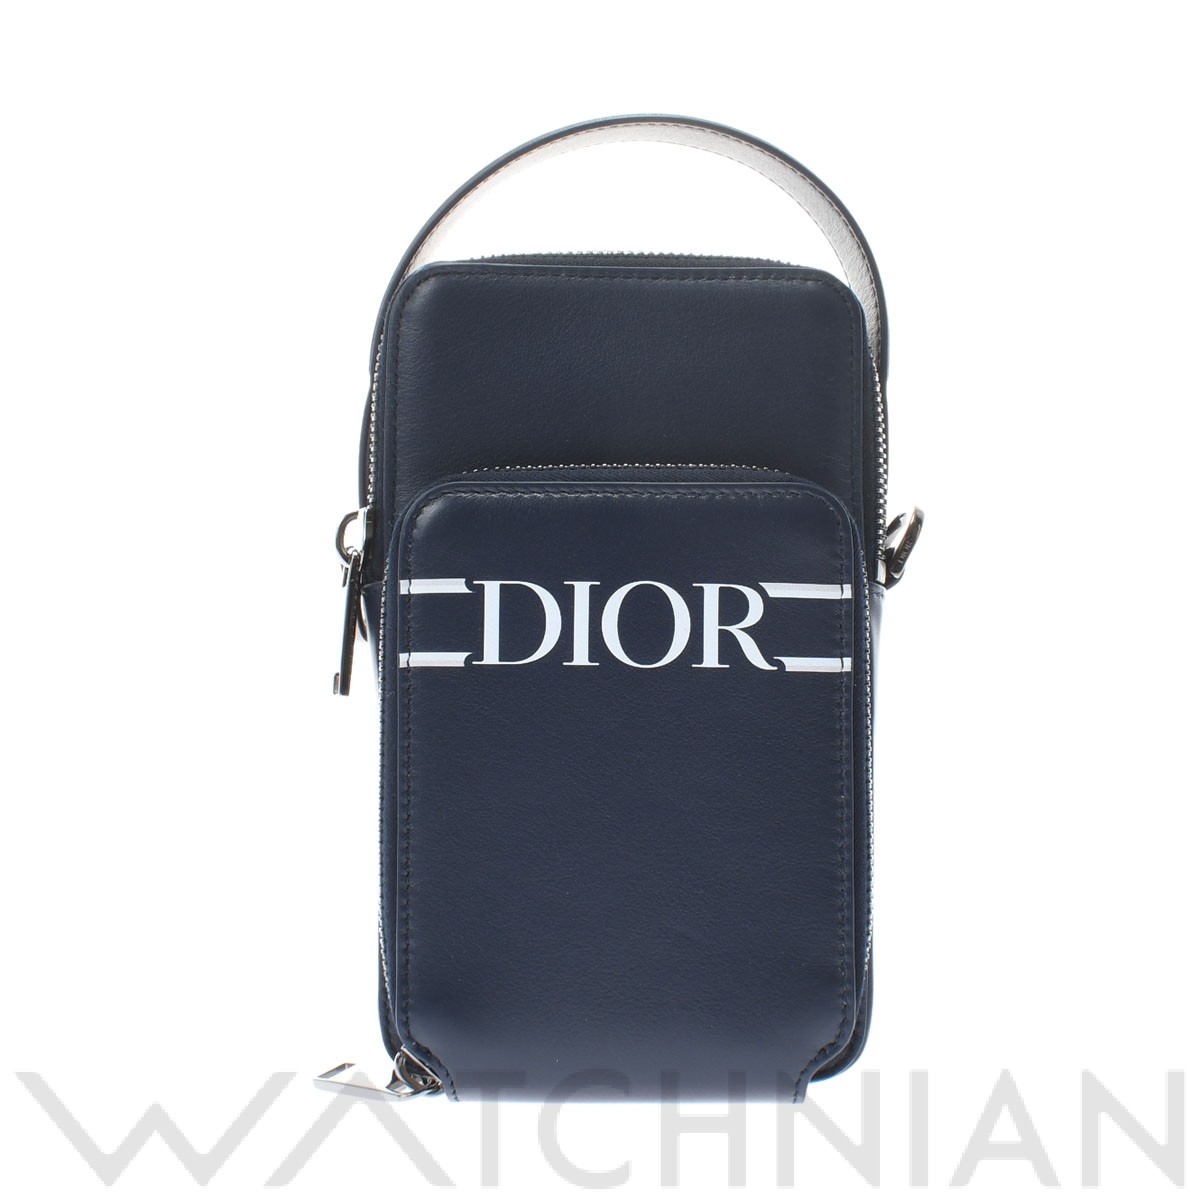 ディオール / Dior RIDER マイクロポーチ ネイビー 2ESCA326VLM_36BU グレインドカーフレザー ユニセックス バッグ  【未使用】【bag】